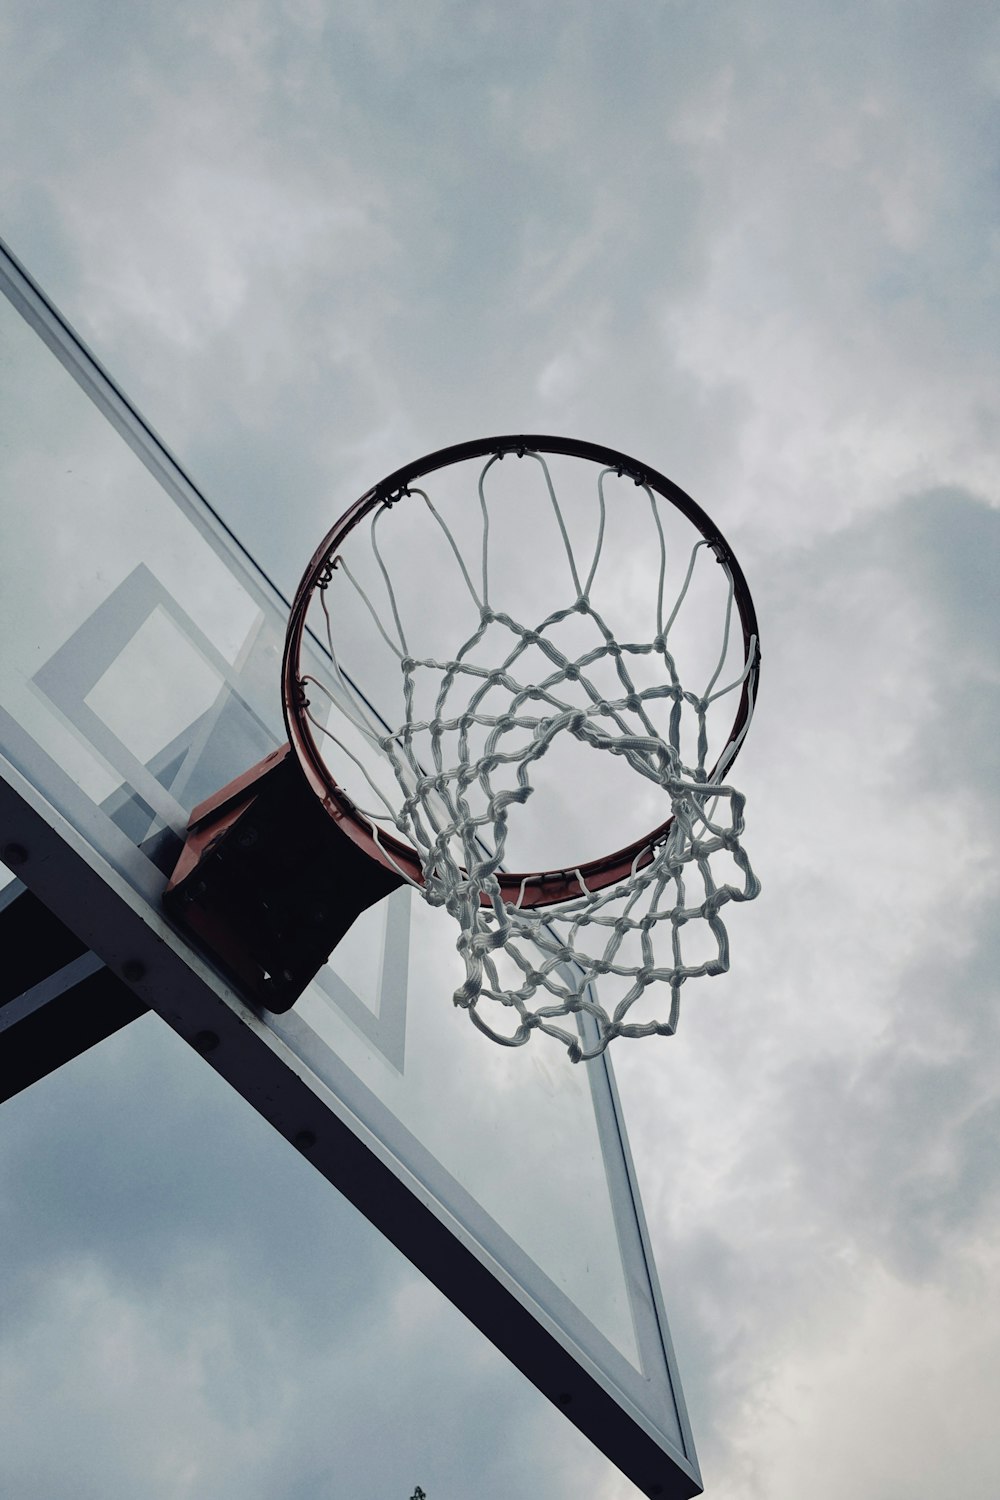 バスケットボールコートのフープを通過するバスケットボール